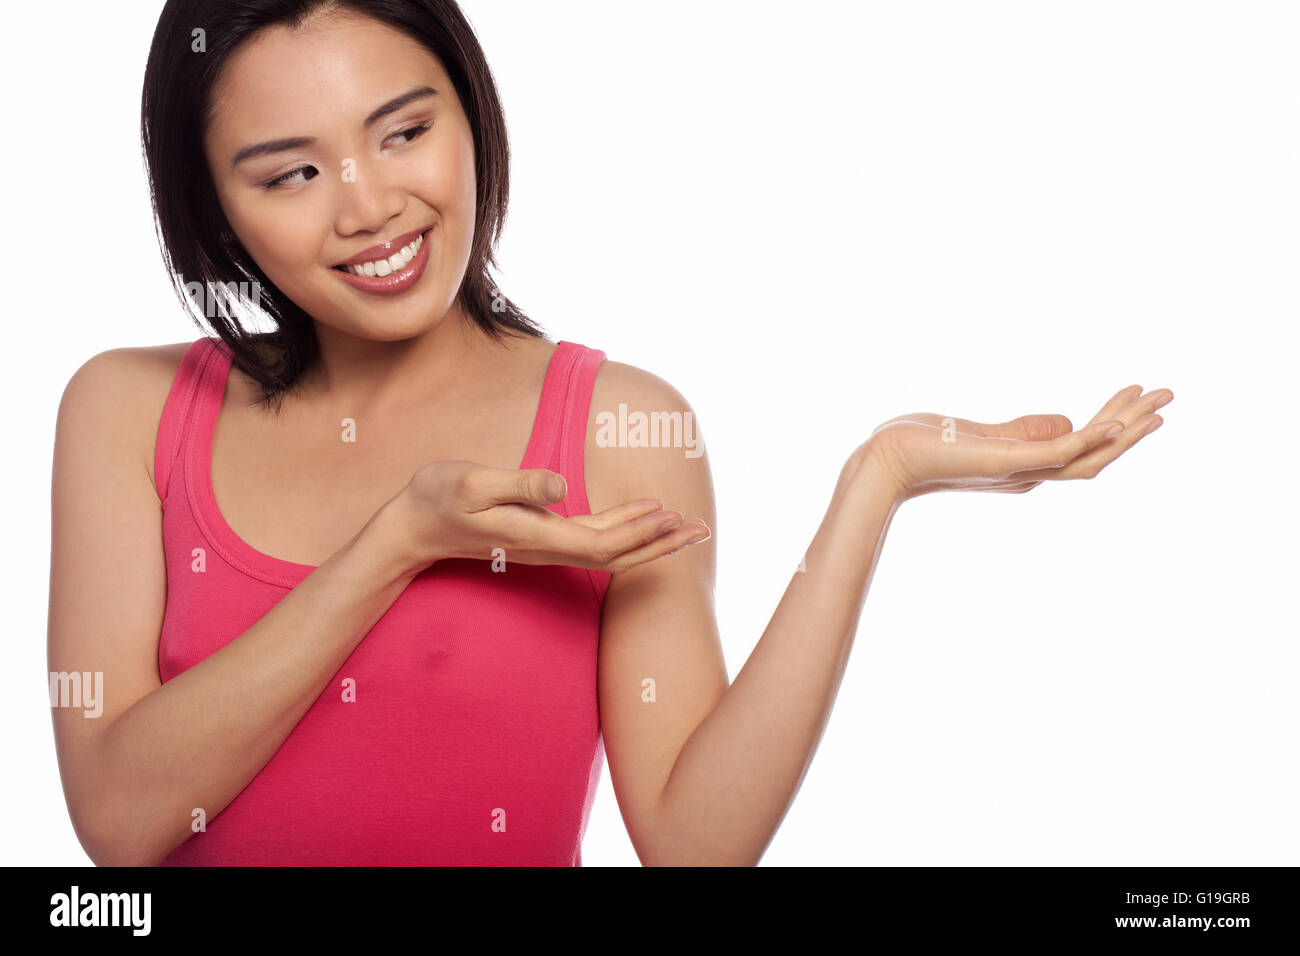 Smiling Asian woman holding out sa paume pour votre placement de produit pour la publicité isolated on white Banque D'Images